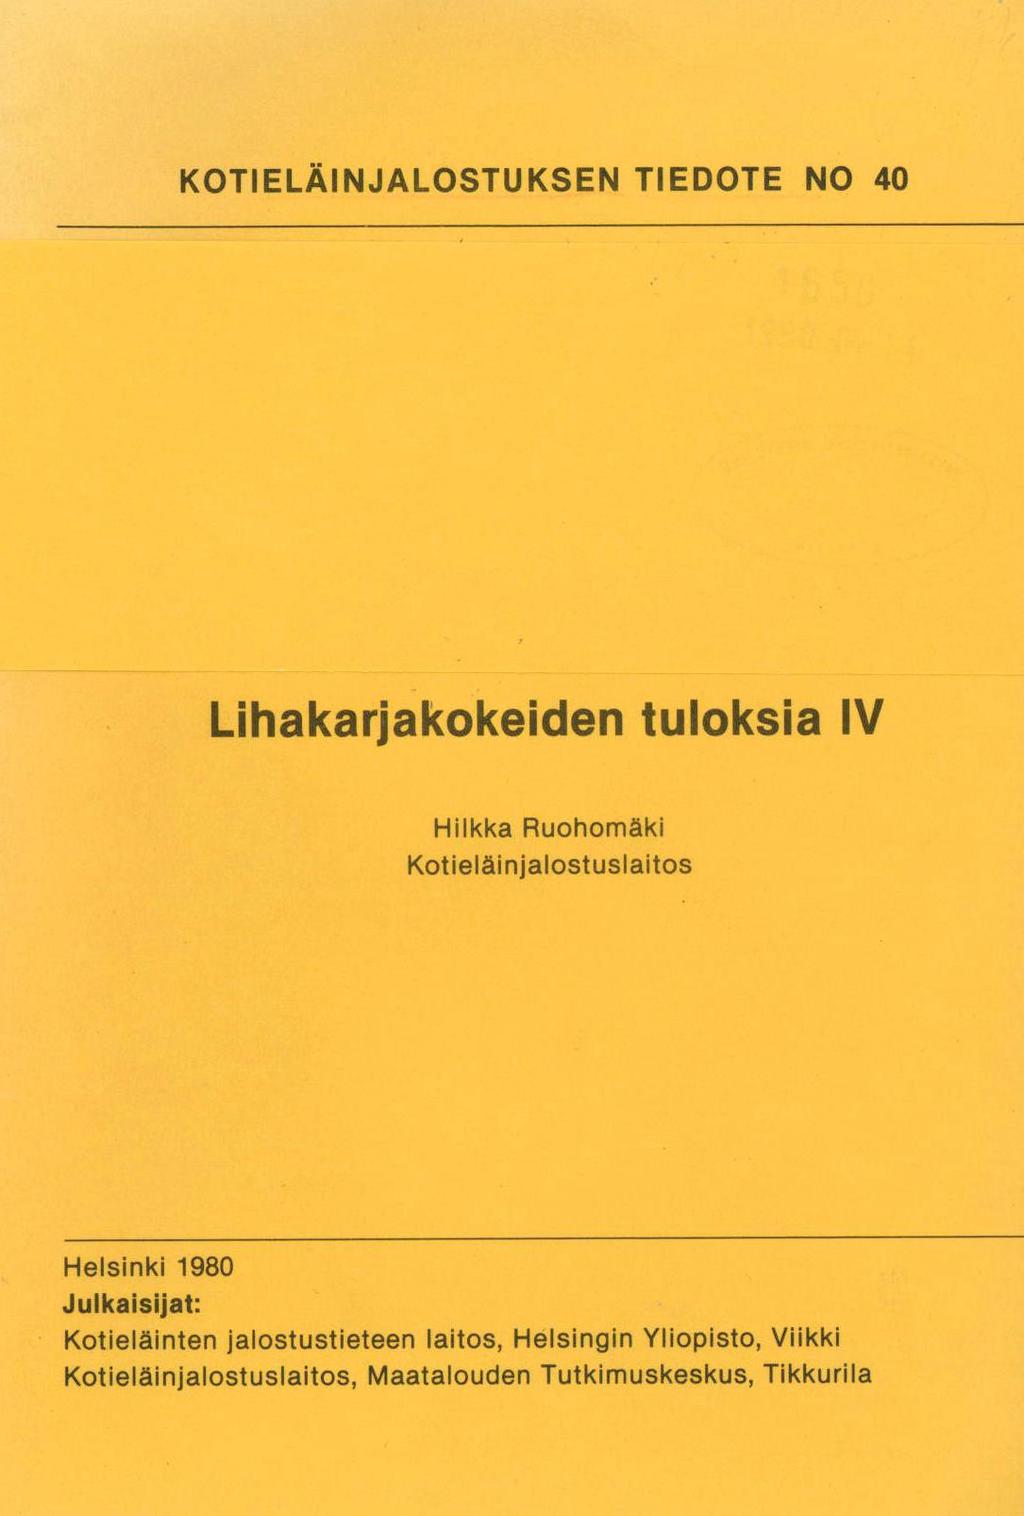 KOTIELÄINJALOSTUKSEN TIEDOTE NO 40 Lihakarjakokeiden tuloksia IV Hilkka Ruohomäki Kotieläinjalostuslaitos Helsinki 1980